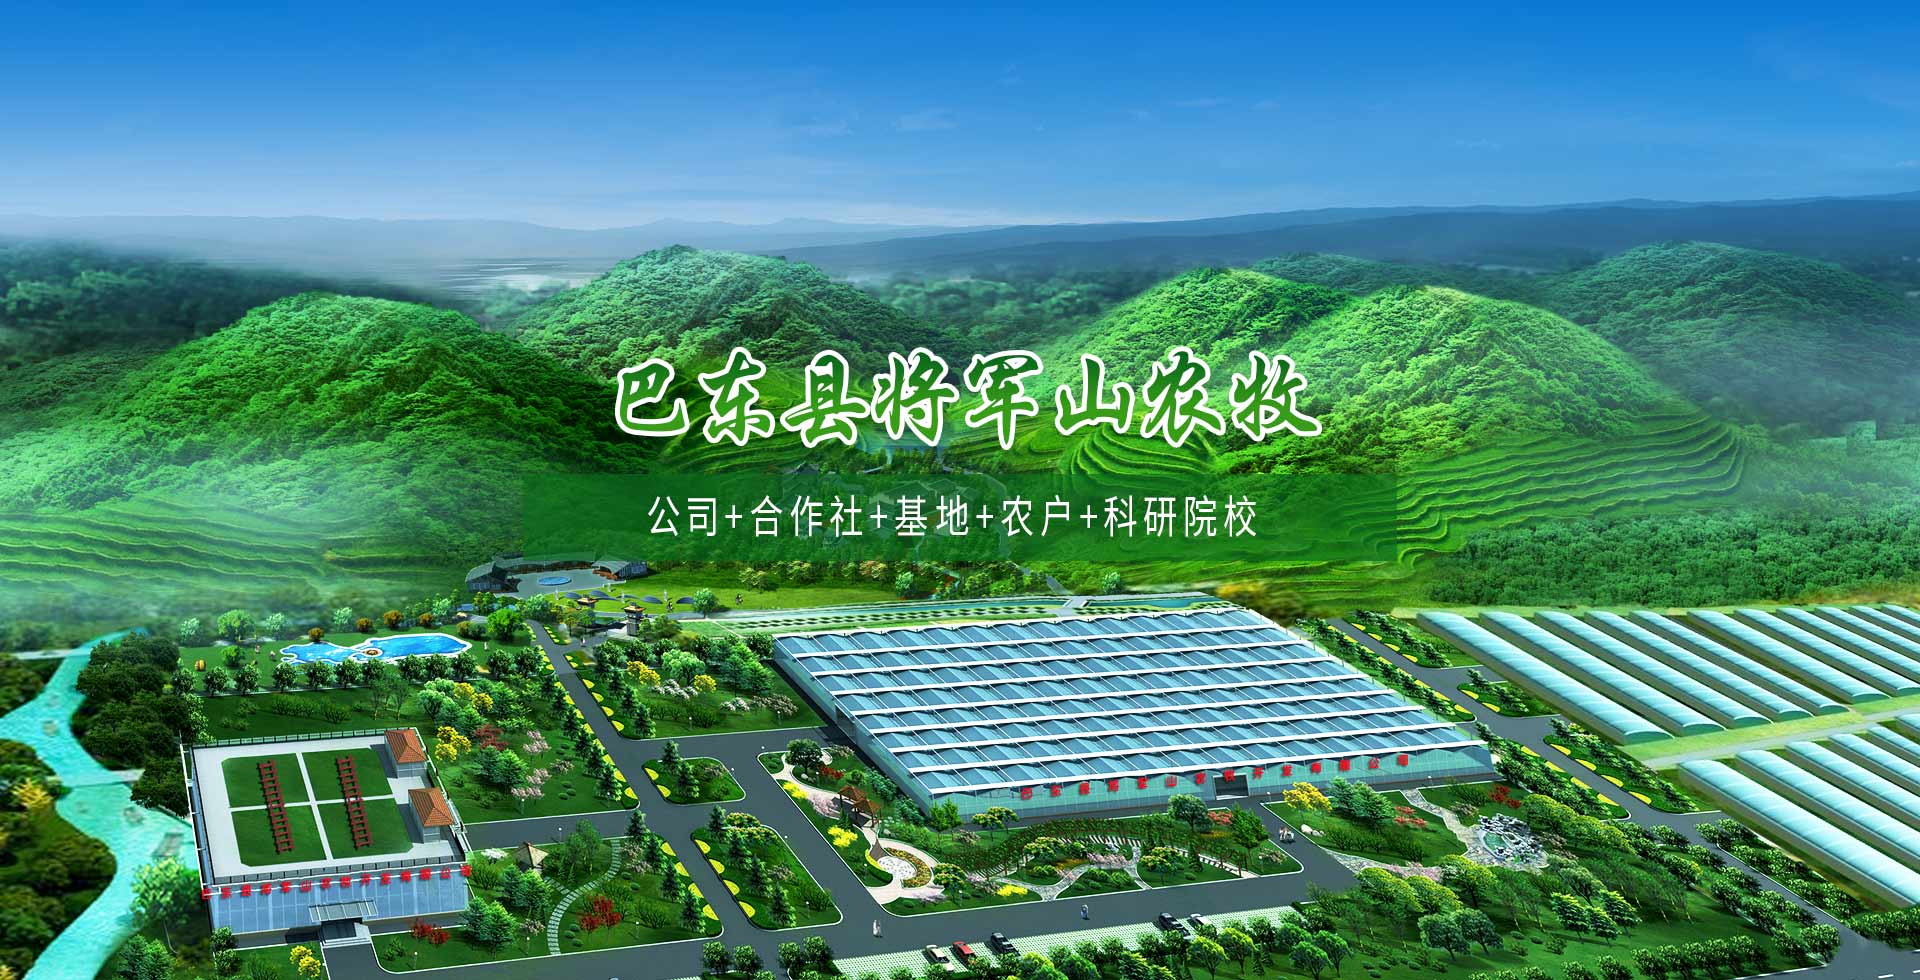 巴东县将军山农牧开发有限公司